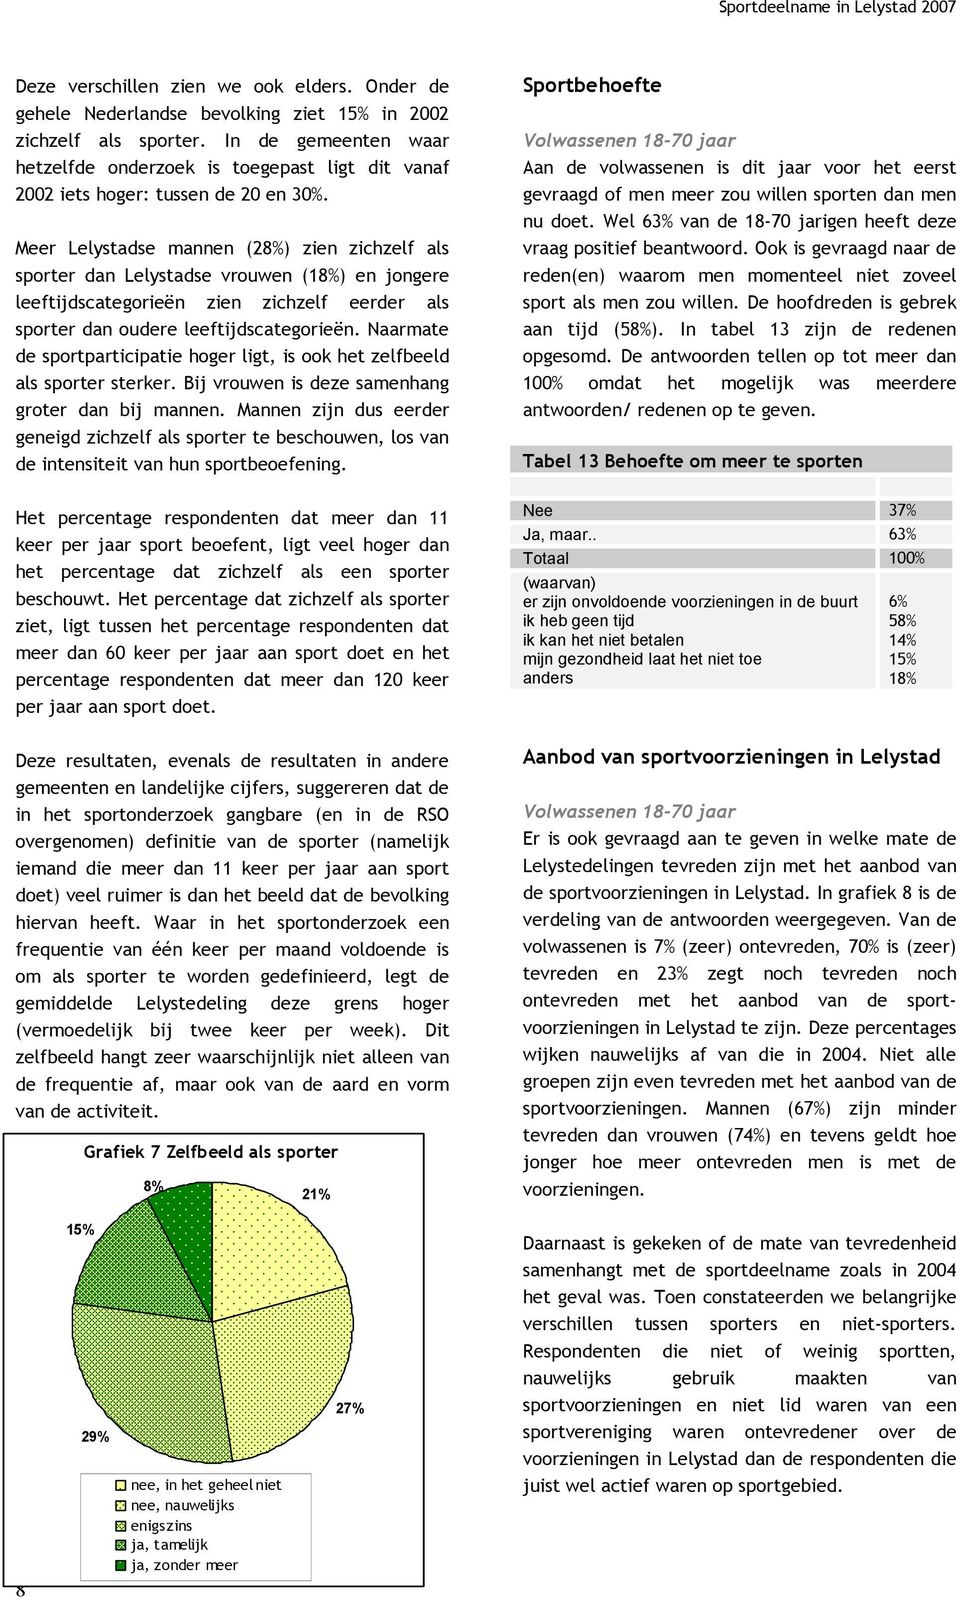 Meer Lelystadse mannen (28%) zien zichzelf als sporter dan Lelystadse vrouwen (18%) en jongere leeftijdscategorieën zien zichzelf eerder als sporter dan oudere leeftijdscategorieën.